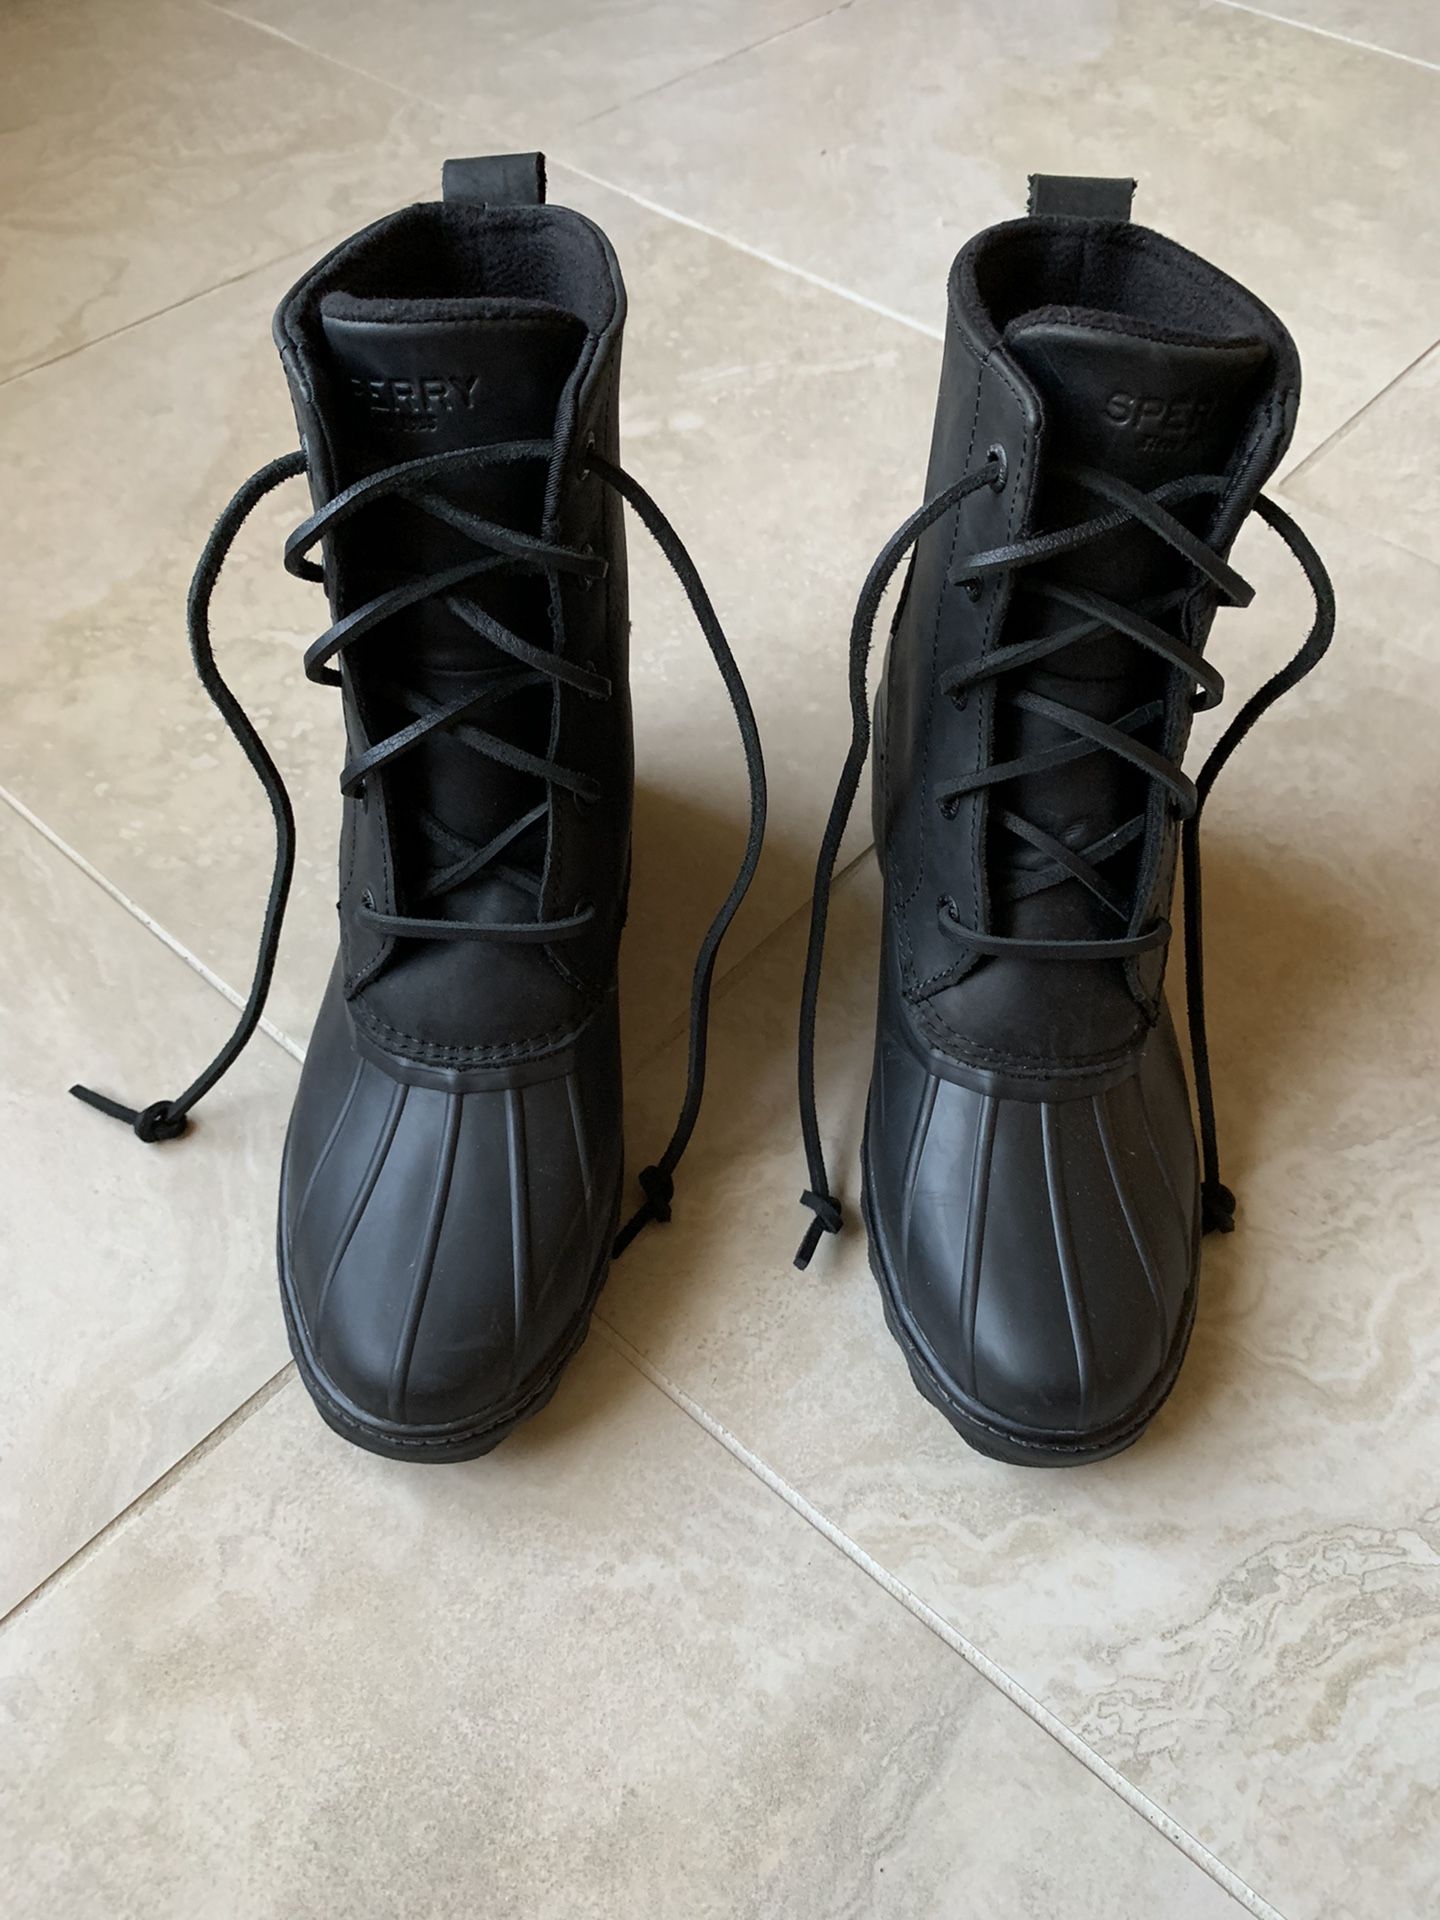 SPERRY  Saltwater Heel Rain boots in Black Size 7 / 7.5